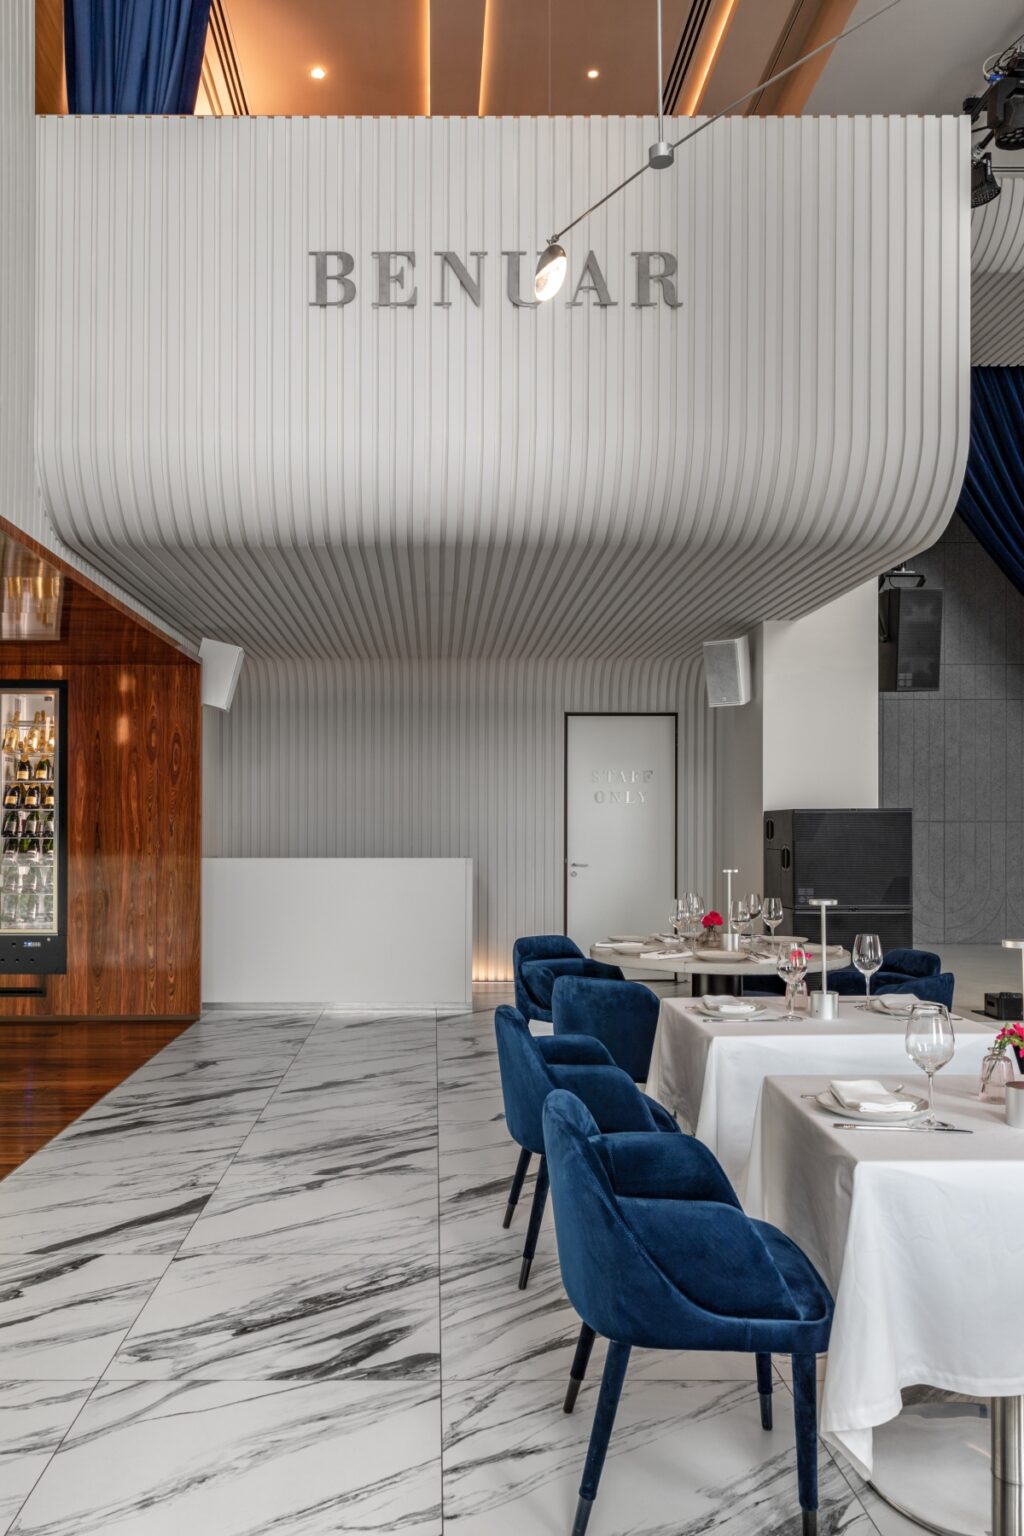 BENUAR レストラン アールデコ調のエレガンスにポップアートのきらめくタッチを加えたレストラン